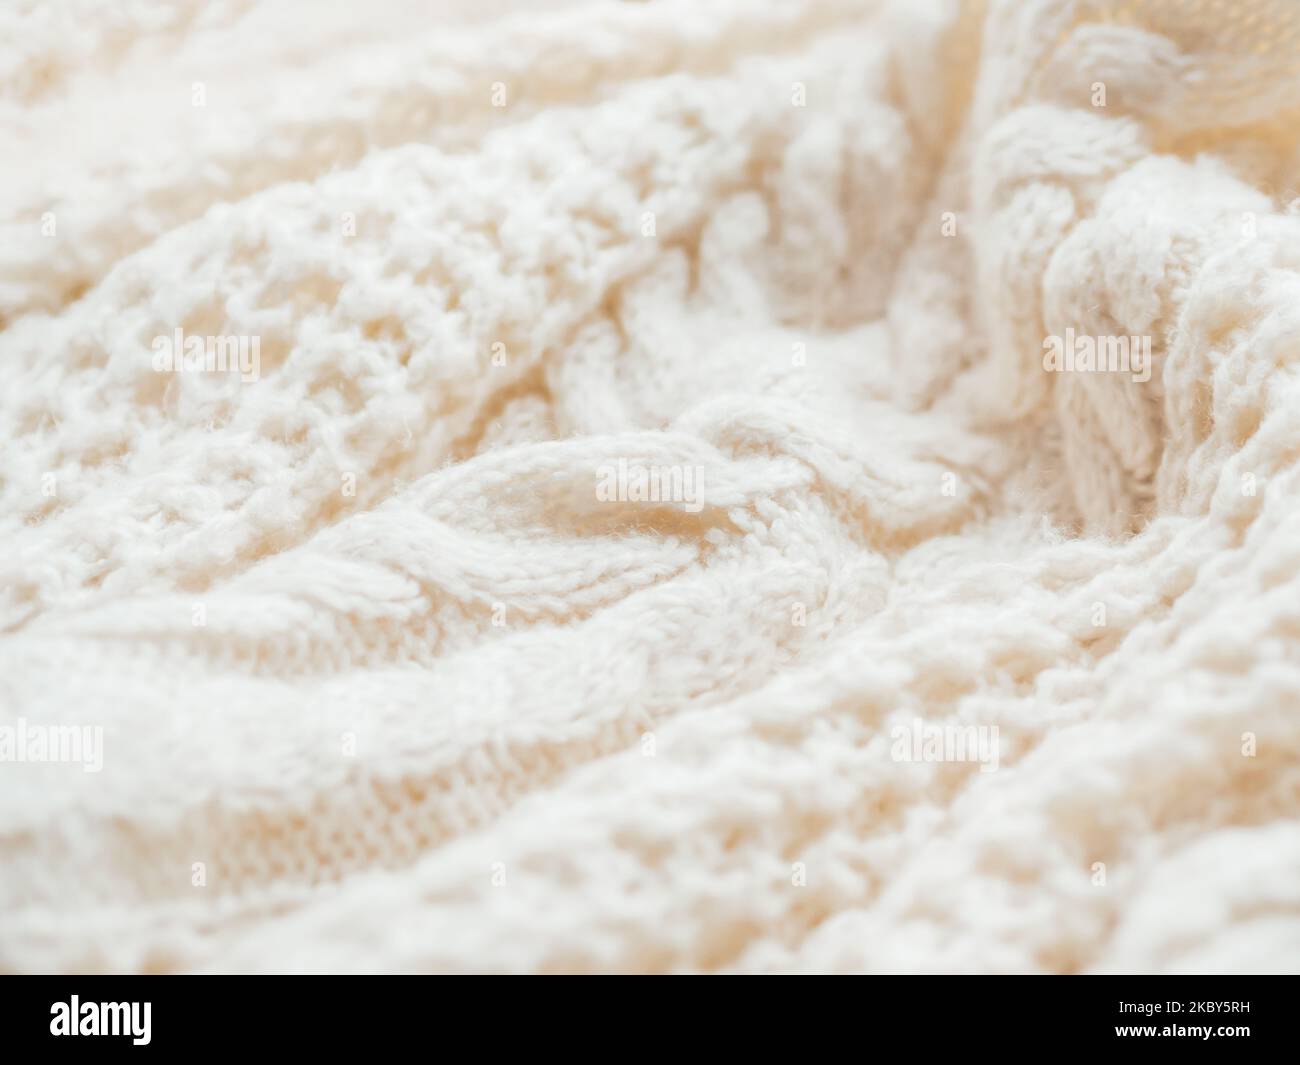 Maglione a maglia a cavo realizzato a mano. Texture di tessuto caldo lavorato a maglia con motivo. Cardigan bianco sbriciolato. Intimo vestito autunnale per un clima sereno. Foto Stock